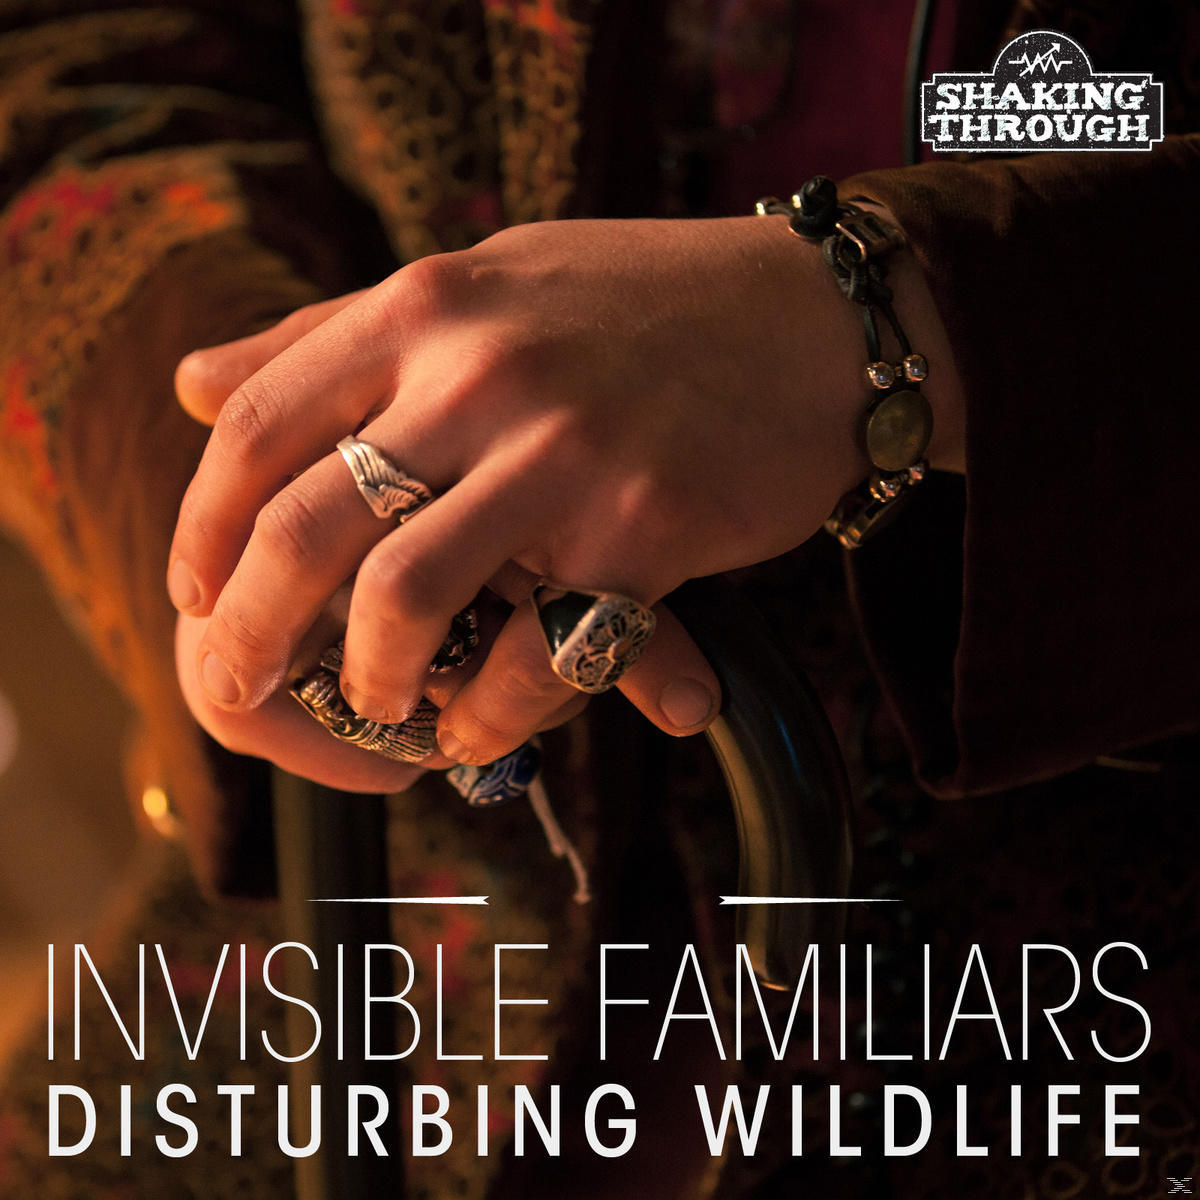 Wildlife (CD) Disturbing Invisible Familiars - -